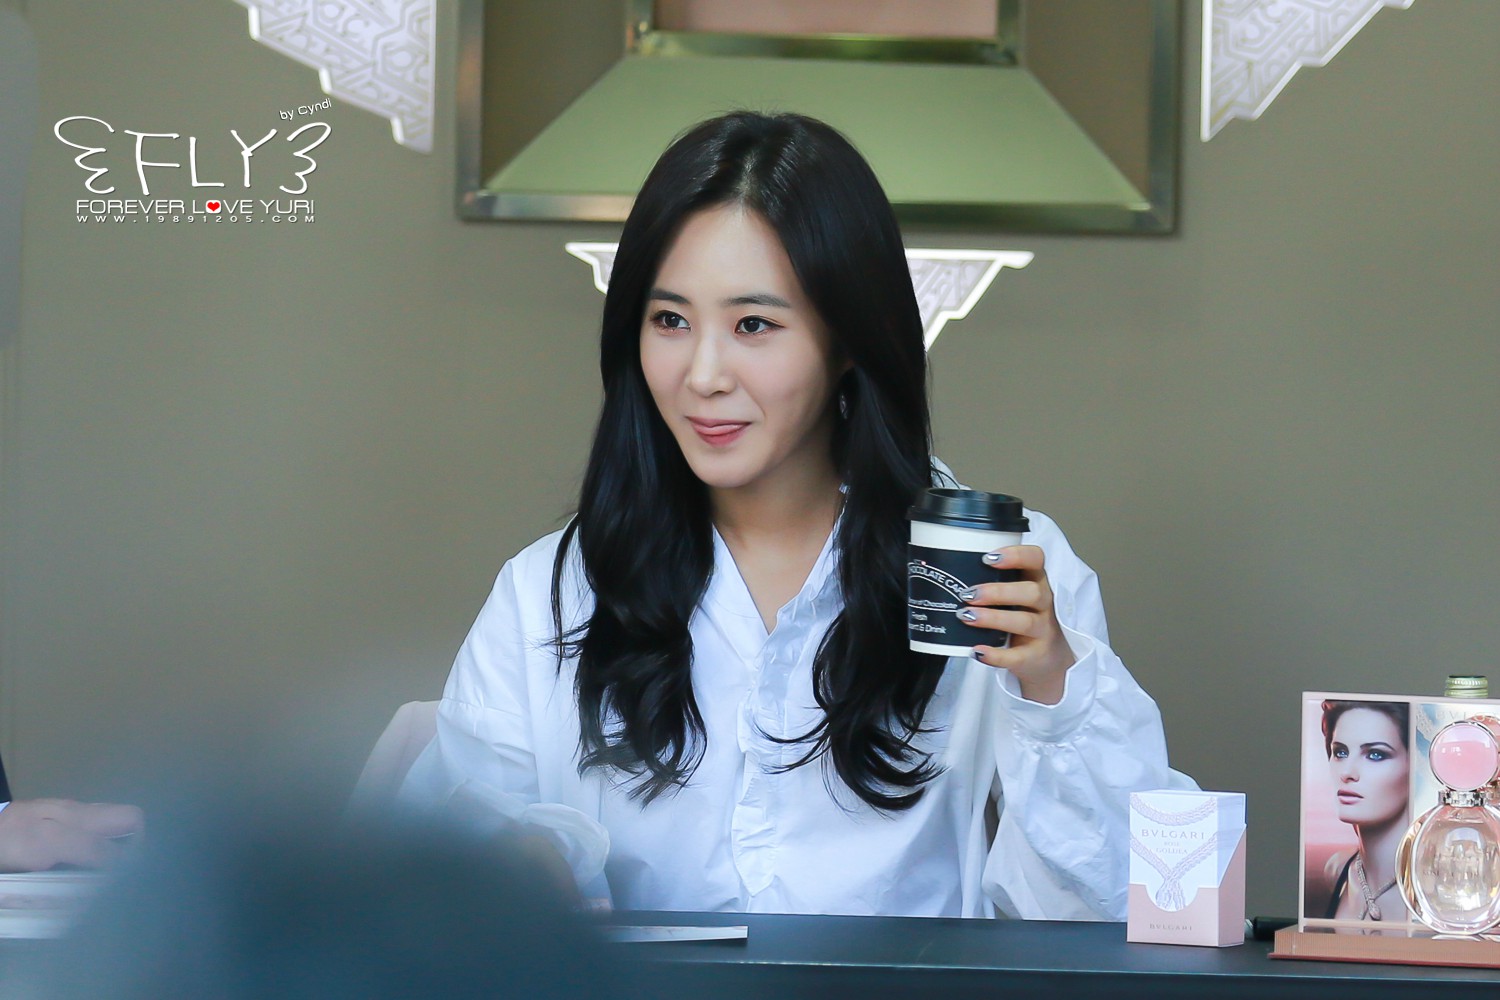 [PIC][09-10-2016]Yuri tham dự buổi Fansign thứ 2 cho thương hiệu nước hoa "BVLGARI Rose Goldea" tại Myeongdong Lotte Duty Free vào chiều nay - Page 3 6a8c5a72jw1f8qt87uf3mj215o0rs0ym